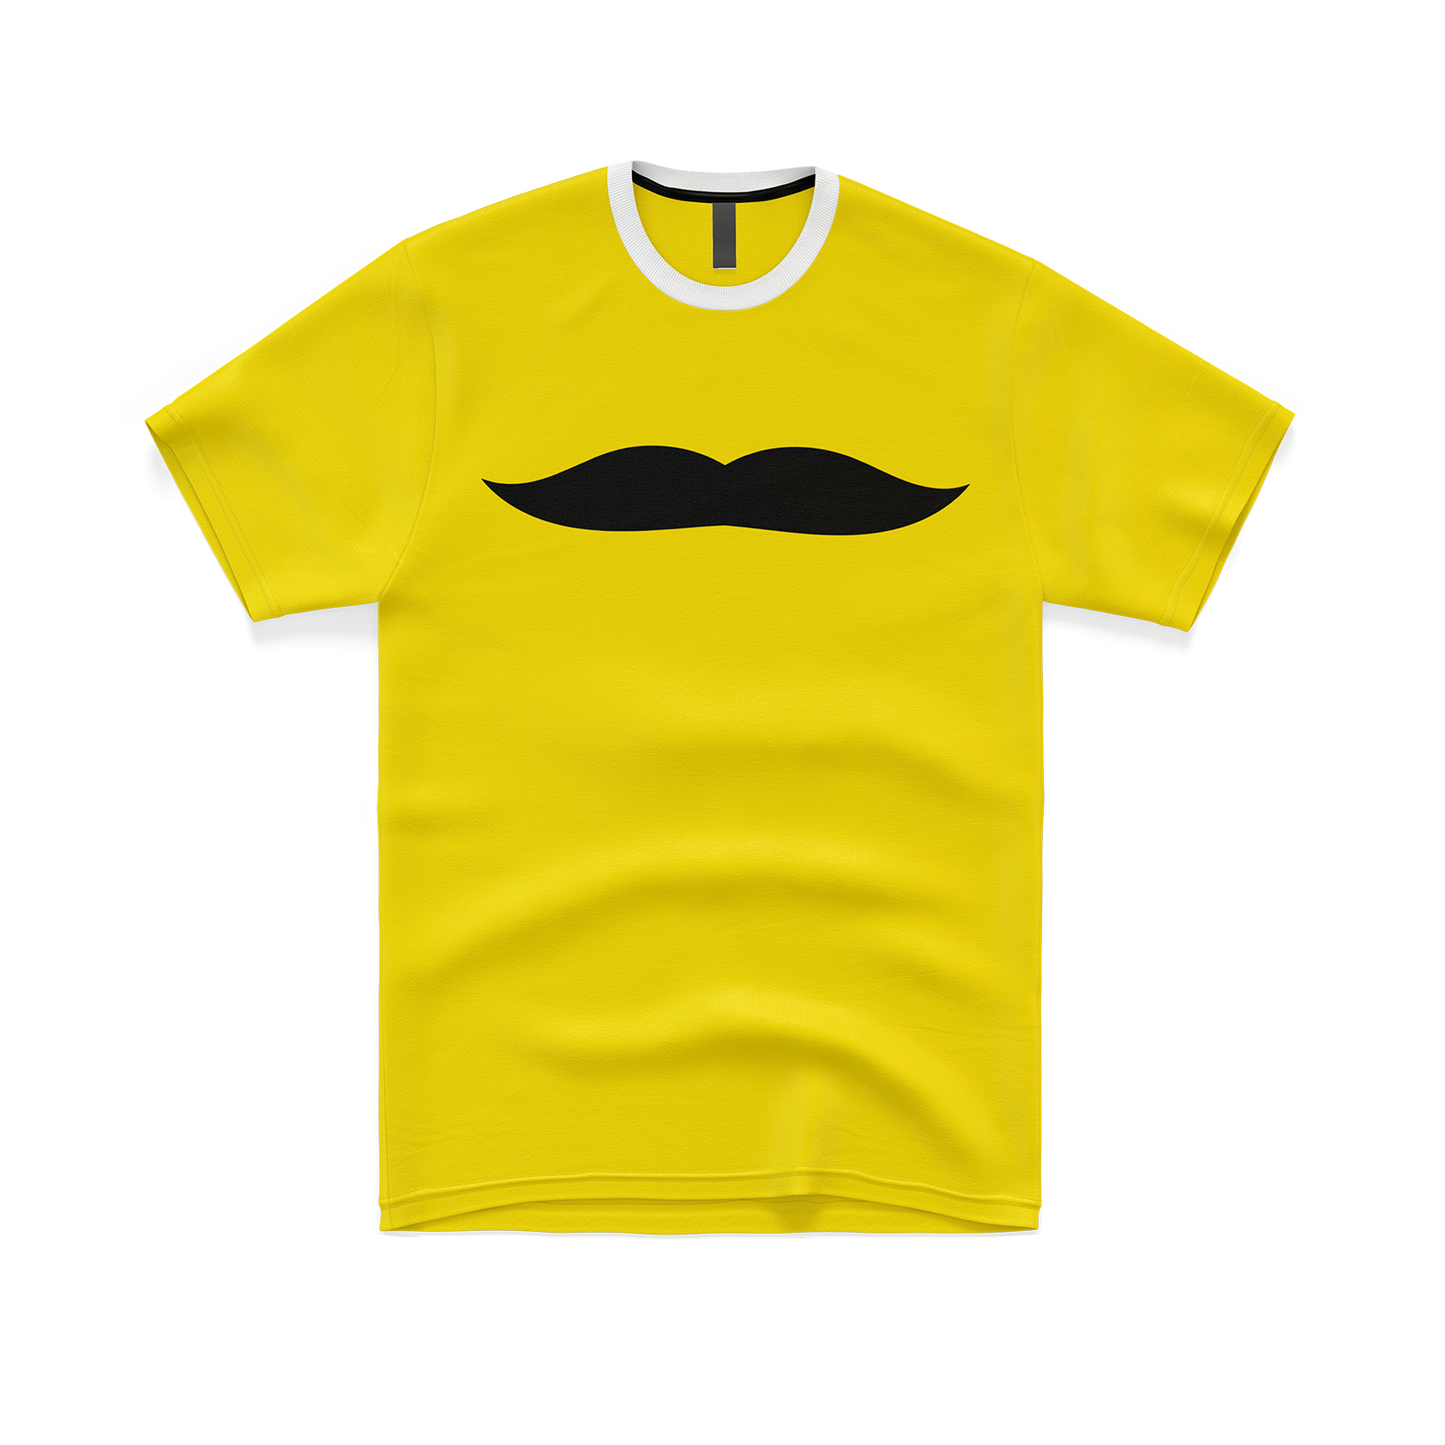 Mustache T-shirt